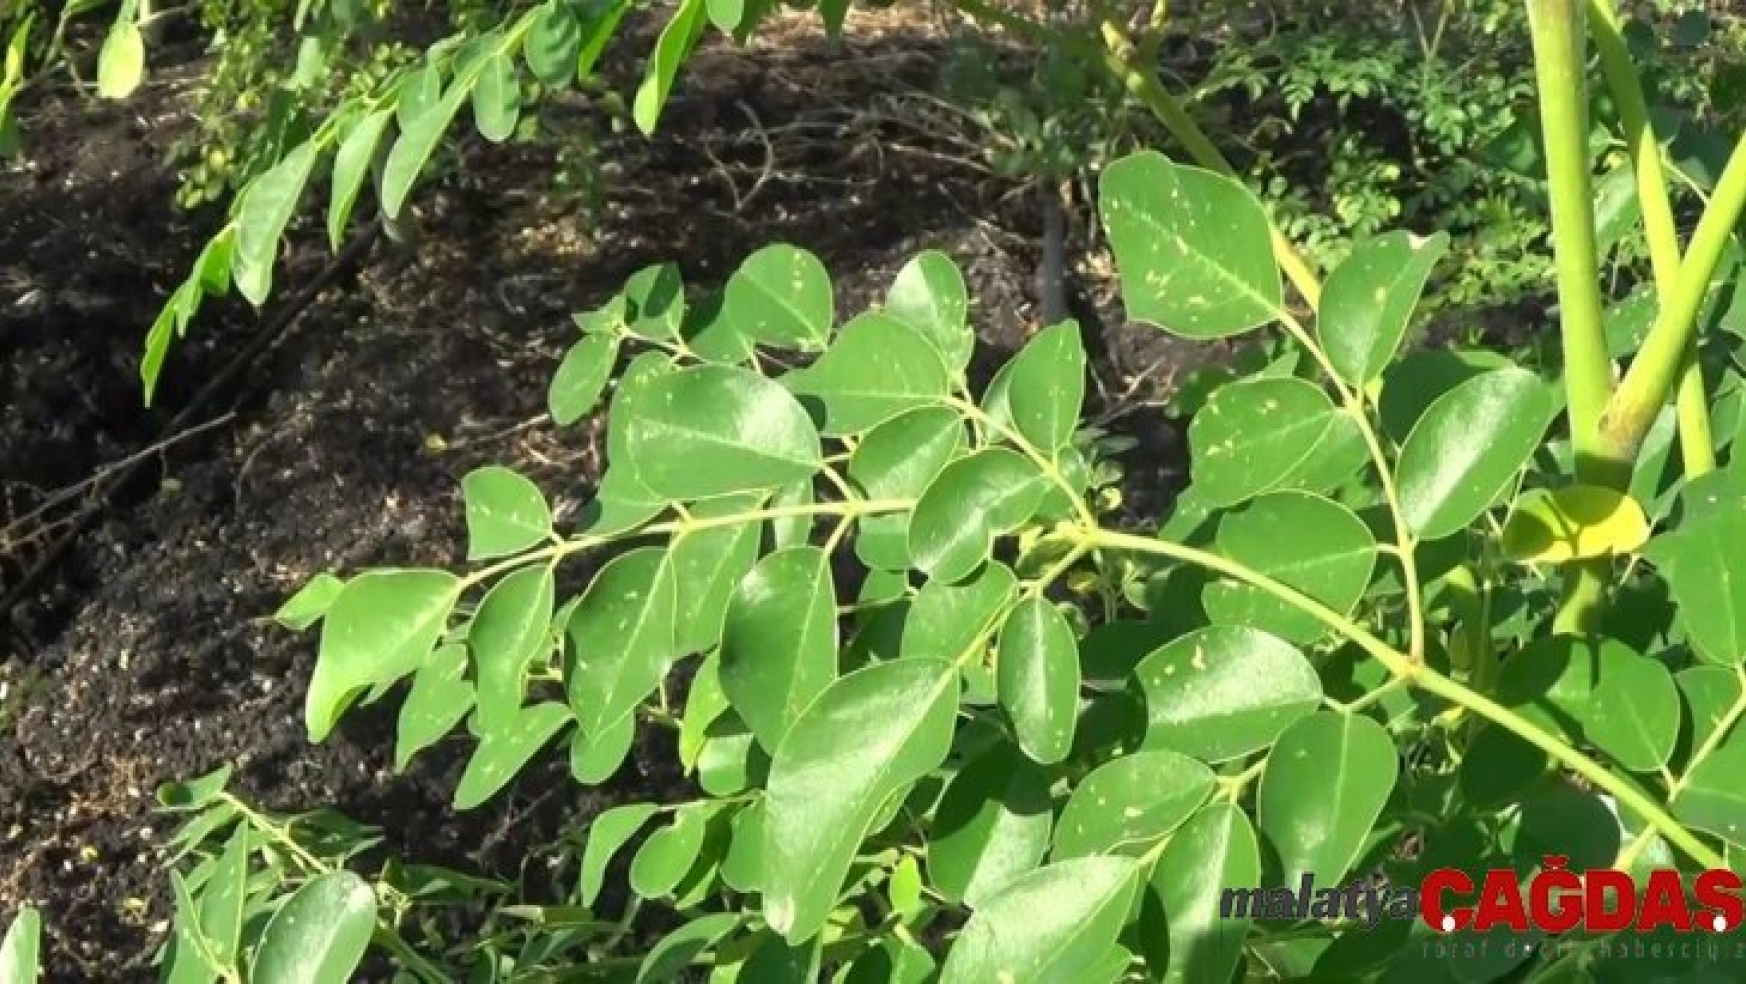 Moringa bitkisi ekonomiye 500 bin TL katkı sağladı